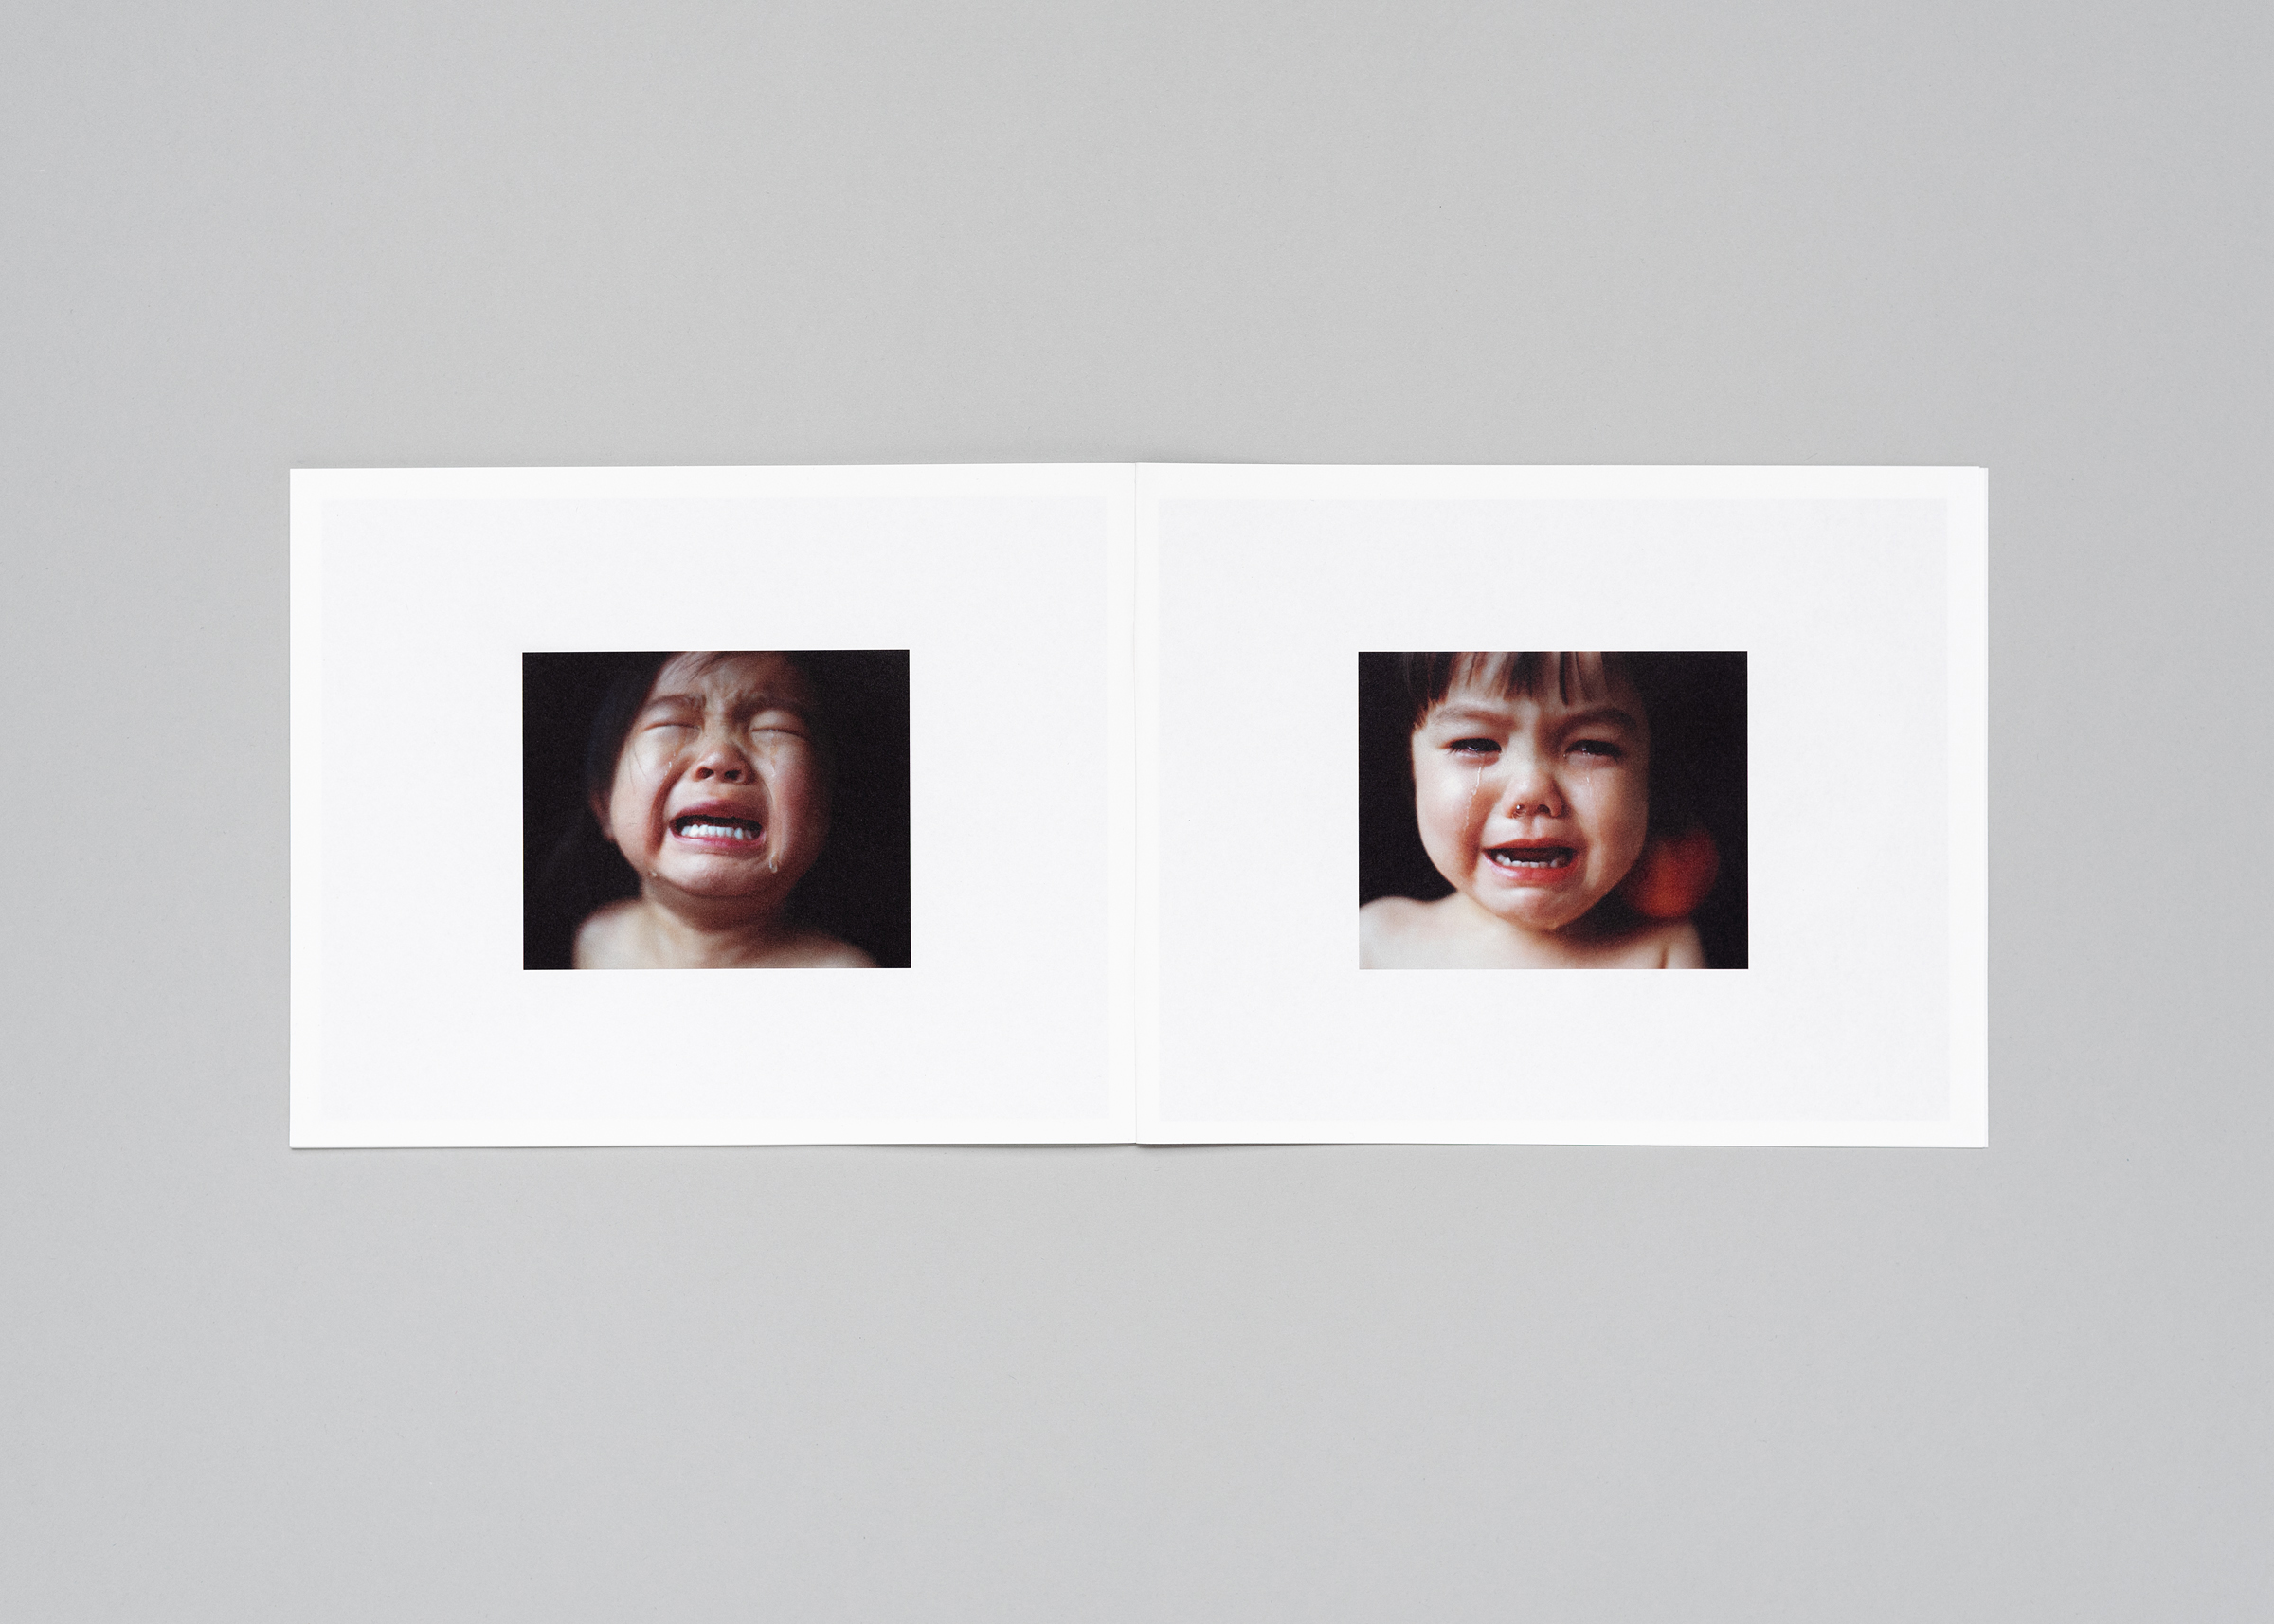 Osamu Yokonami — Wild Children — Book